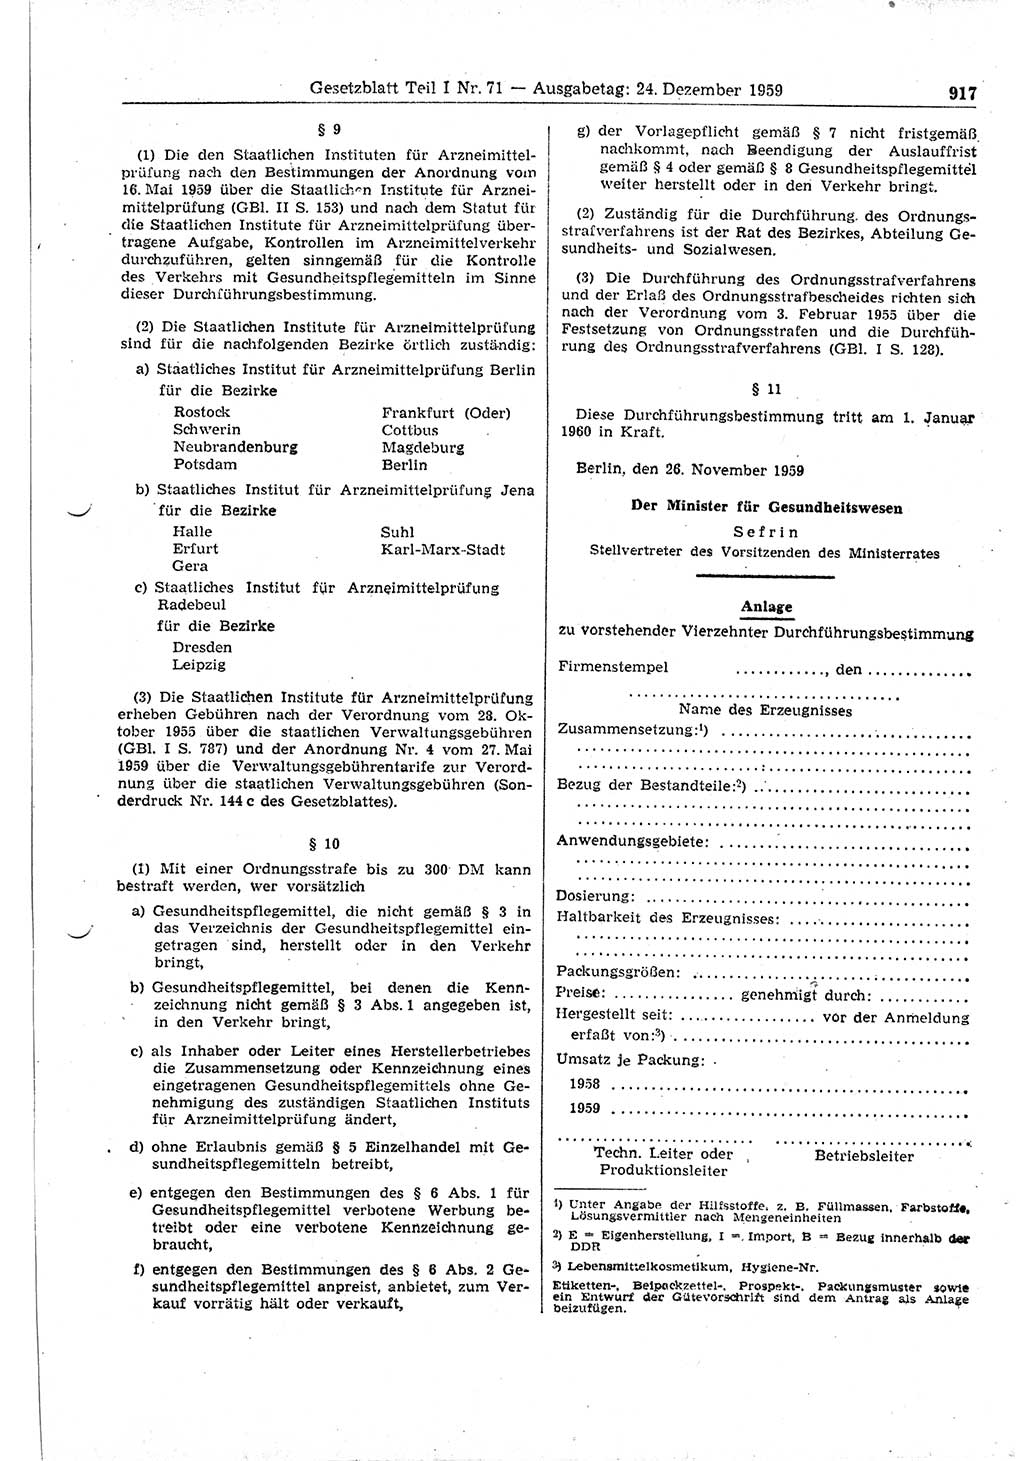 Gesetzblatt (GBl.) der Deutschen Demokratischen Republik (DDR) Teil Ⅰ 1959, Seite 917 (GBl. DDR Ⅰ 1959, S. 917)